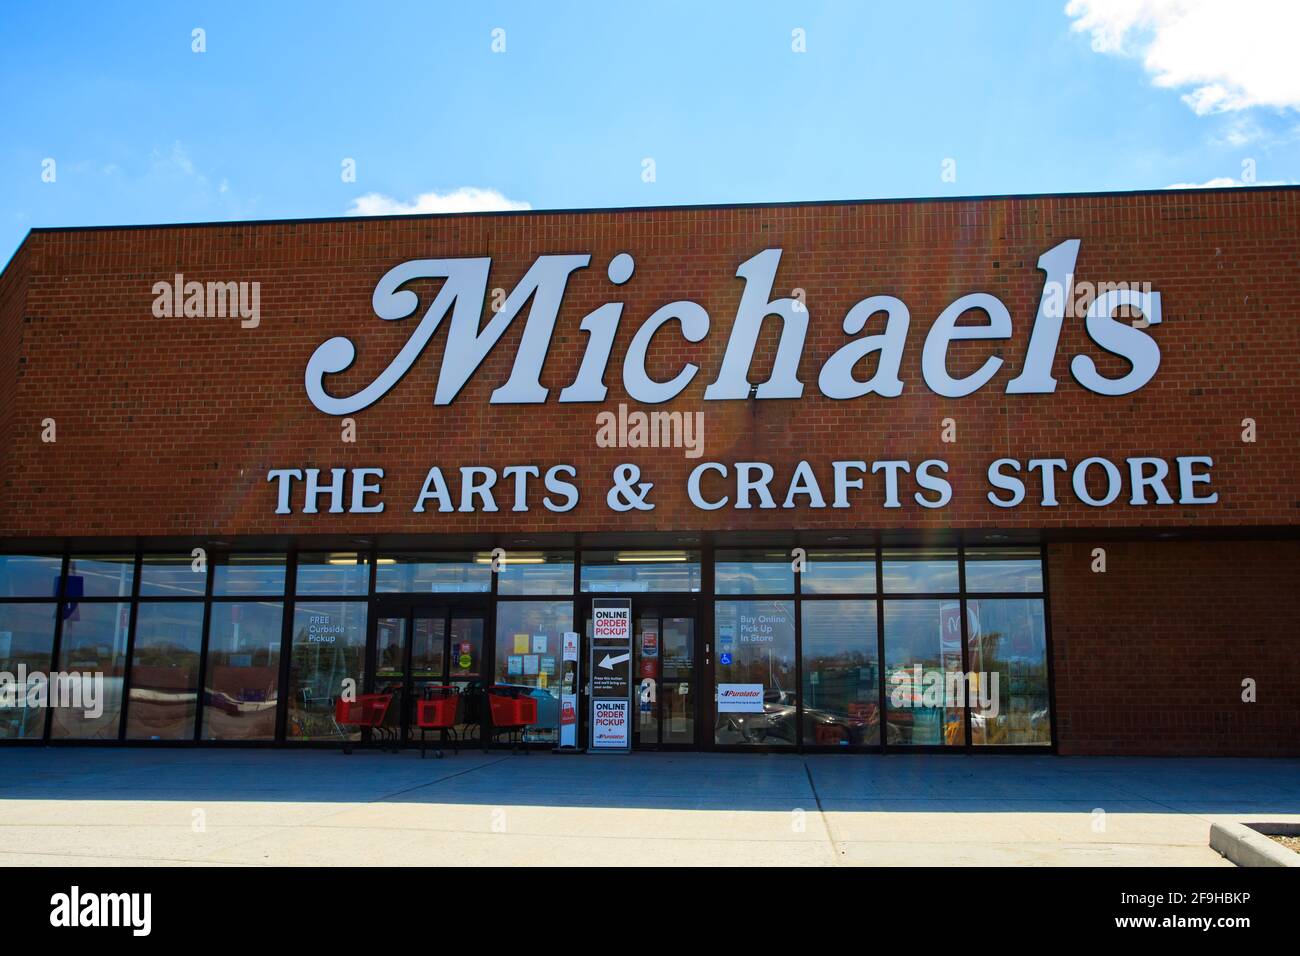 Ottawa, Ontario, Canada - 18 aprile 2021: Un negozio di arti e artigianato Michaels che offre il ritiro online degli ordini alla sua porta nel Centro commerciale Pinecrest. Foto Stock